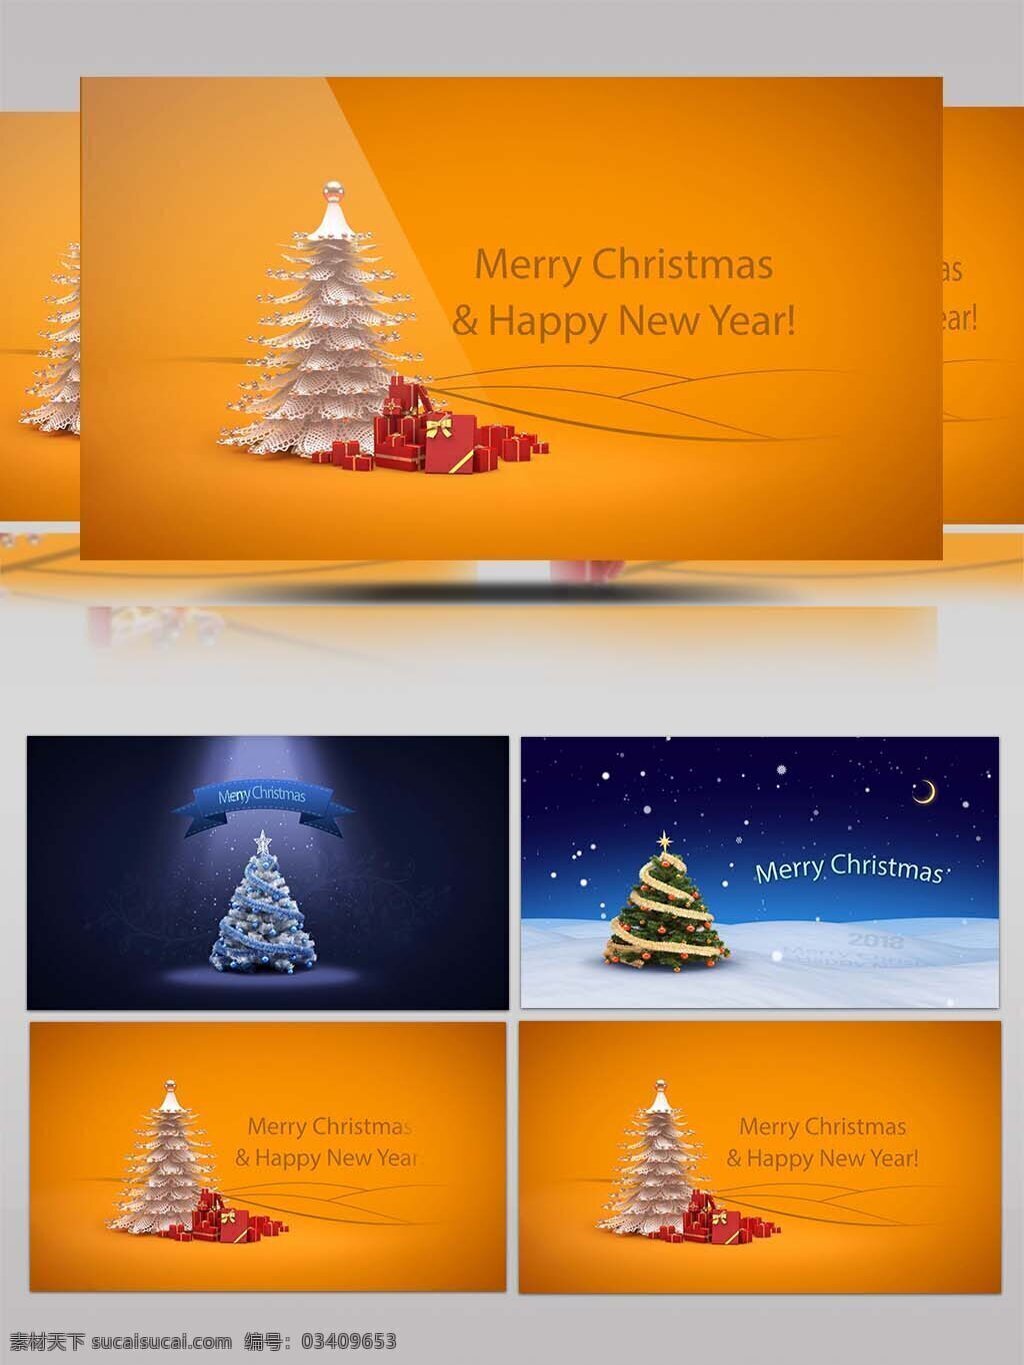 三 种 圣诞节 圣诞树 形式 展现 蓝色 礼物 圣诞老人 橘黄色 圣诞 圣诞帽